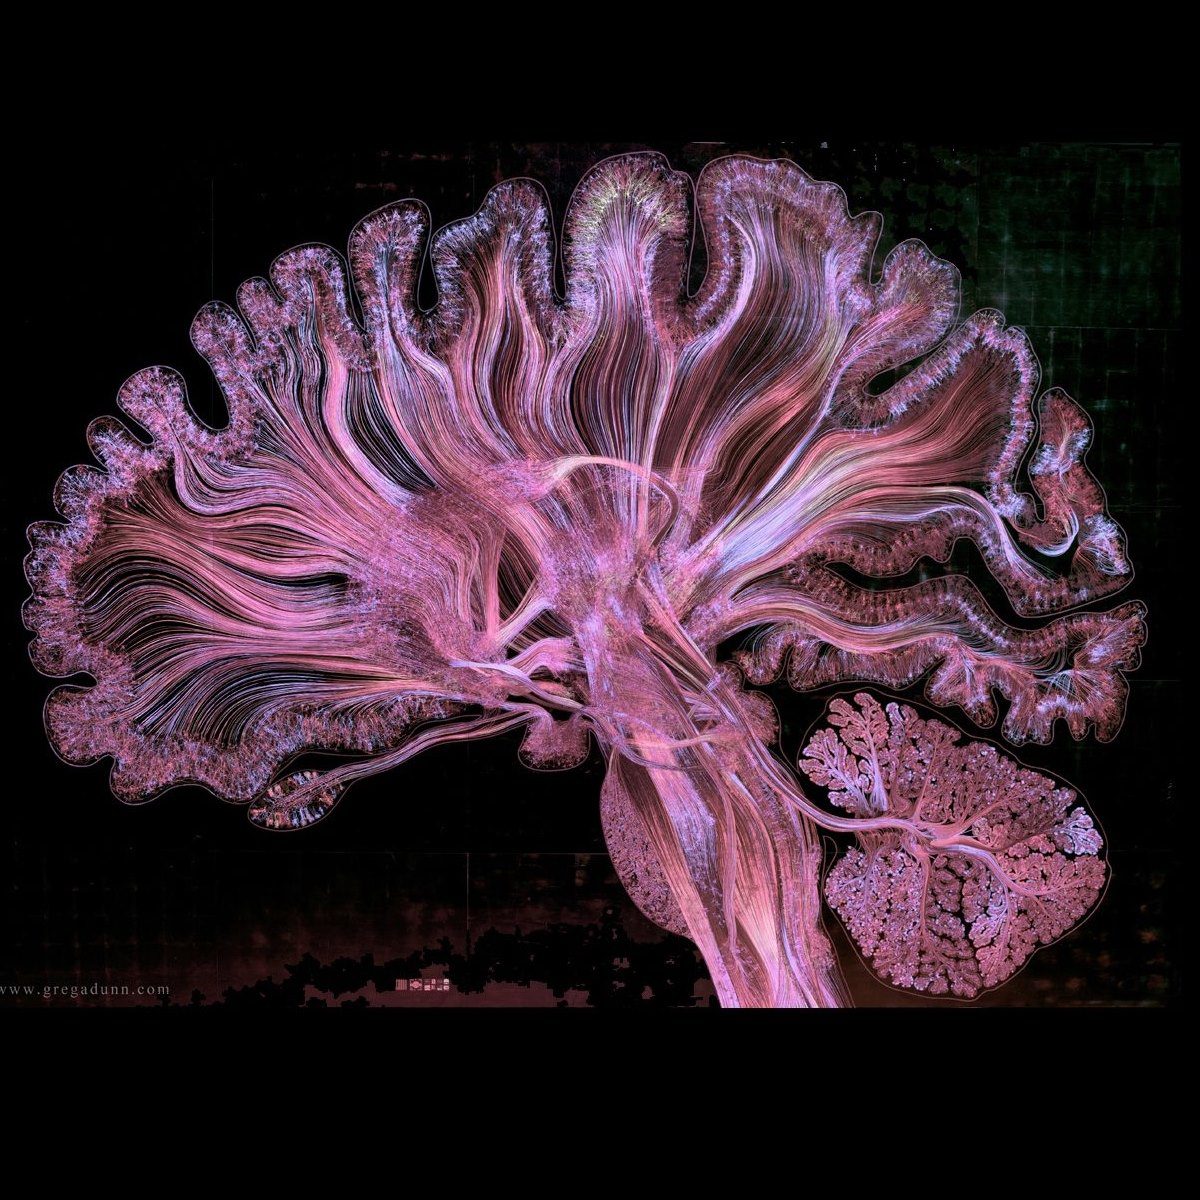 zdjęcie przekroju mózgu